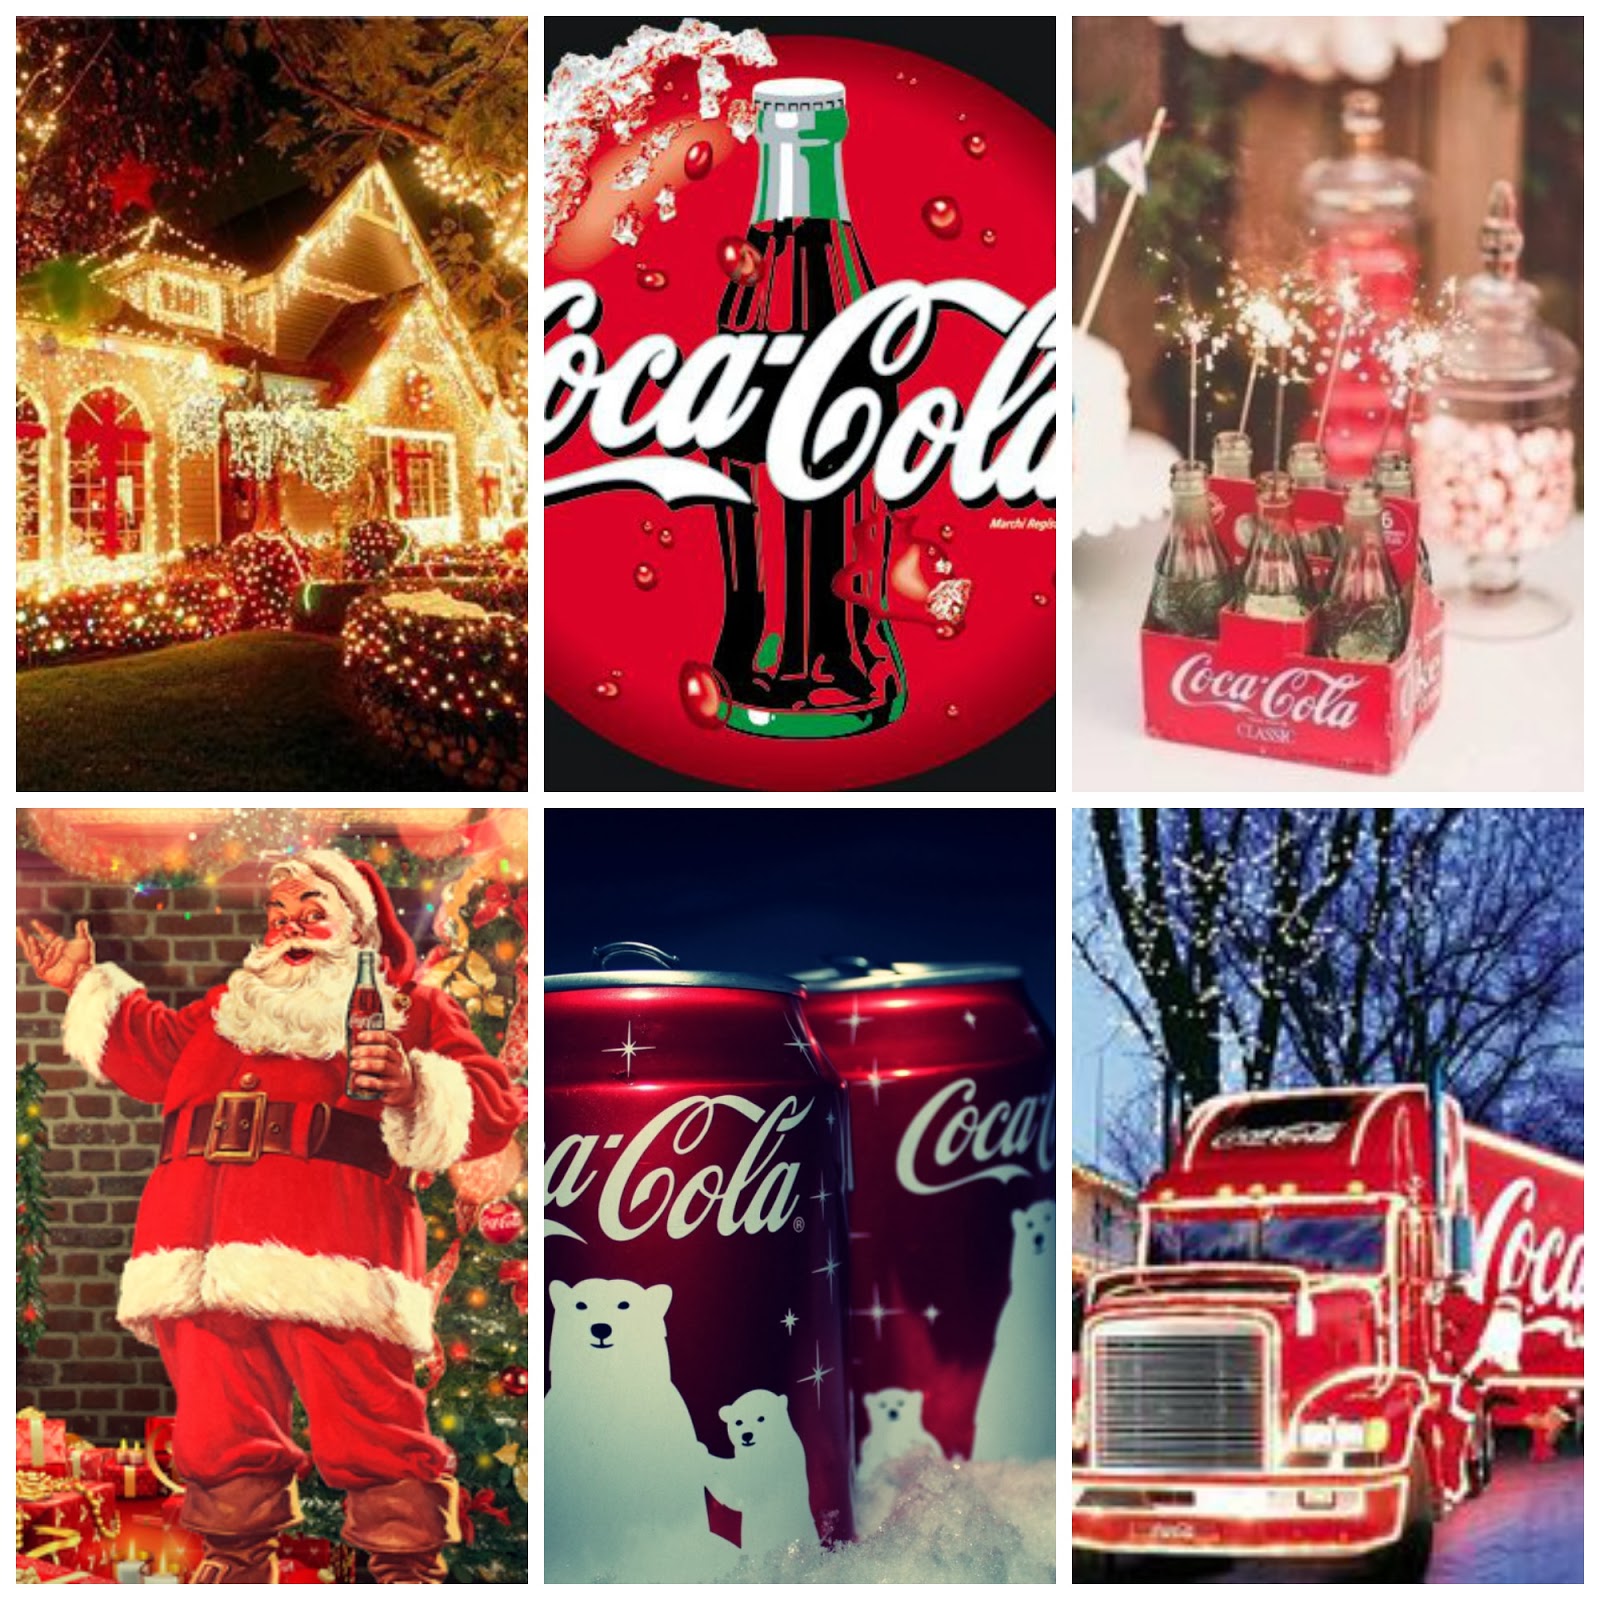 Новогоднее Поздравление Кока Кола